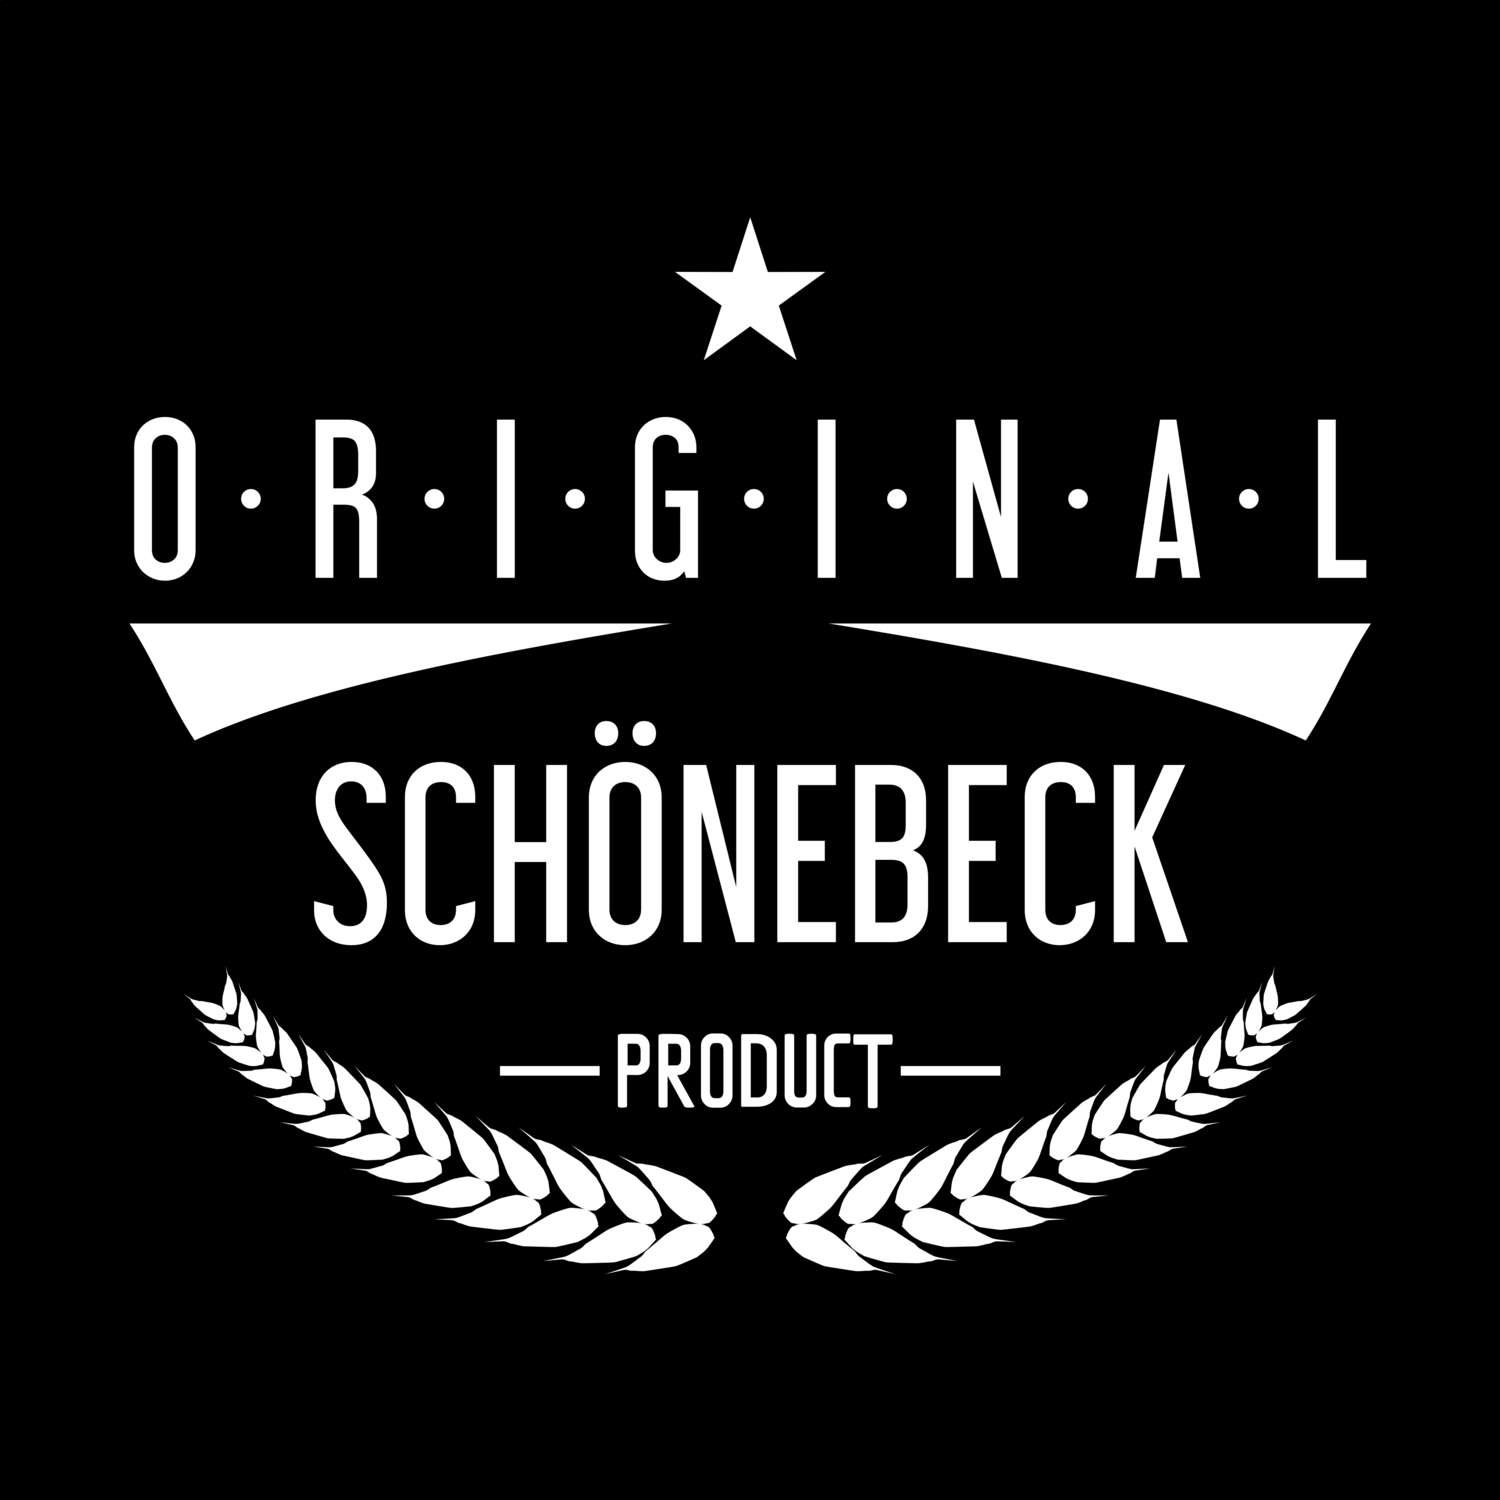 Schönebeck T-Shirt »Original Product«